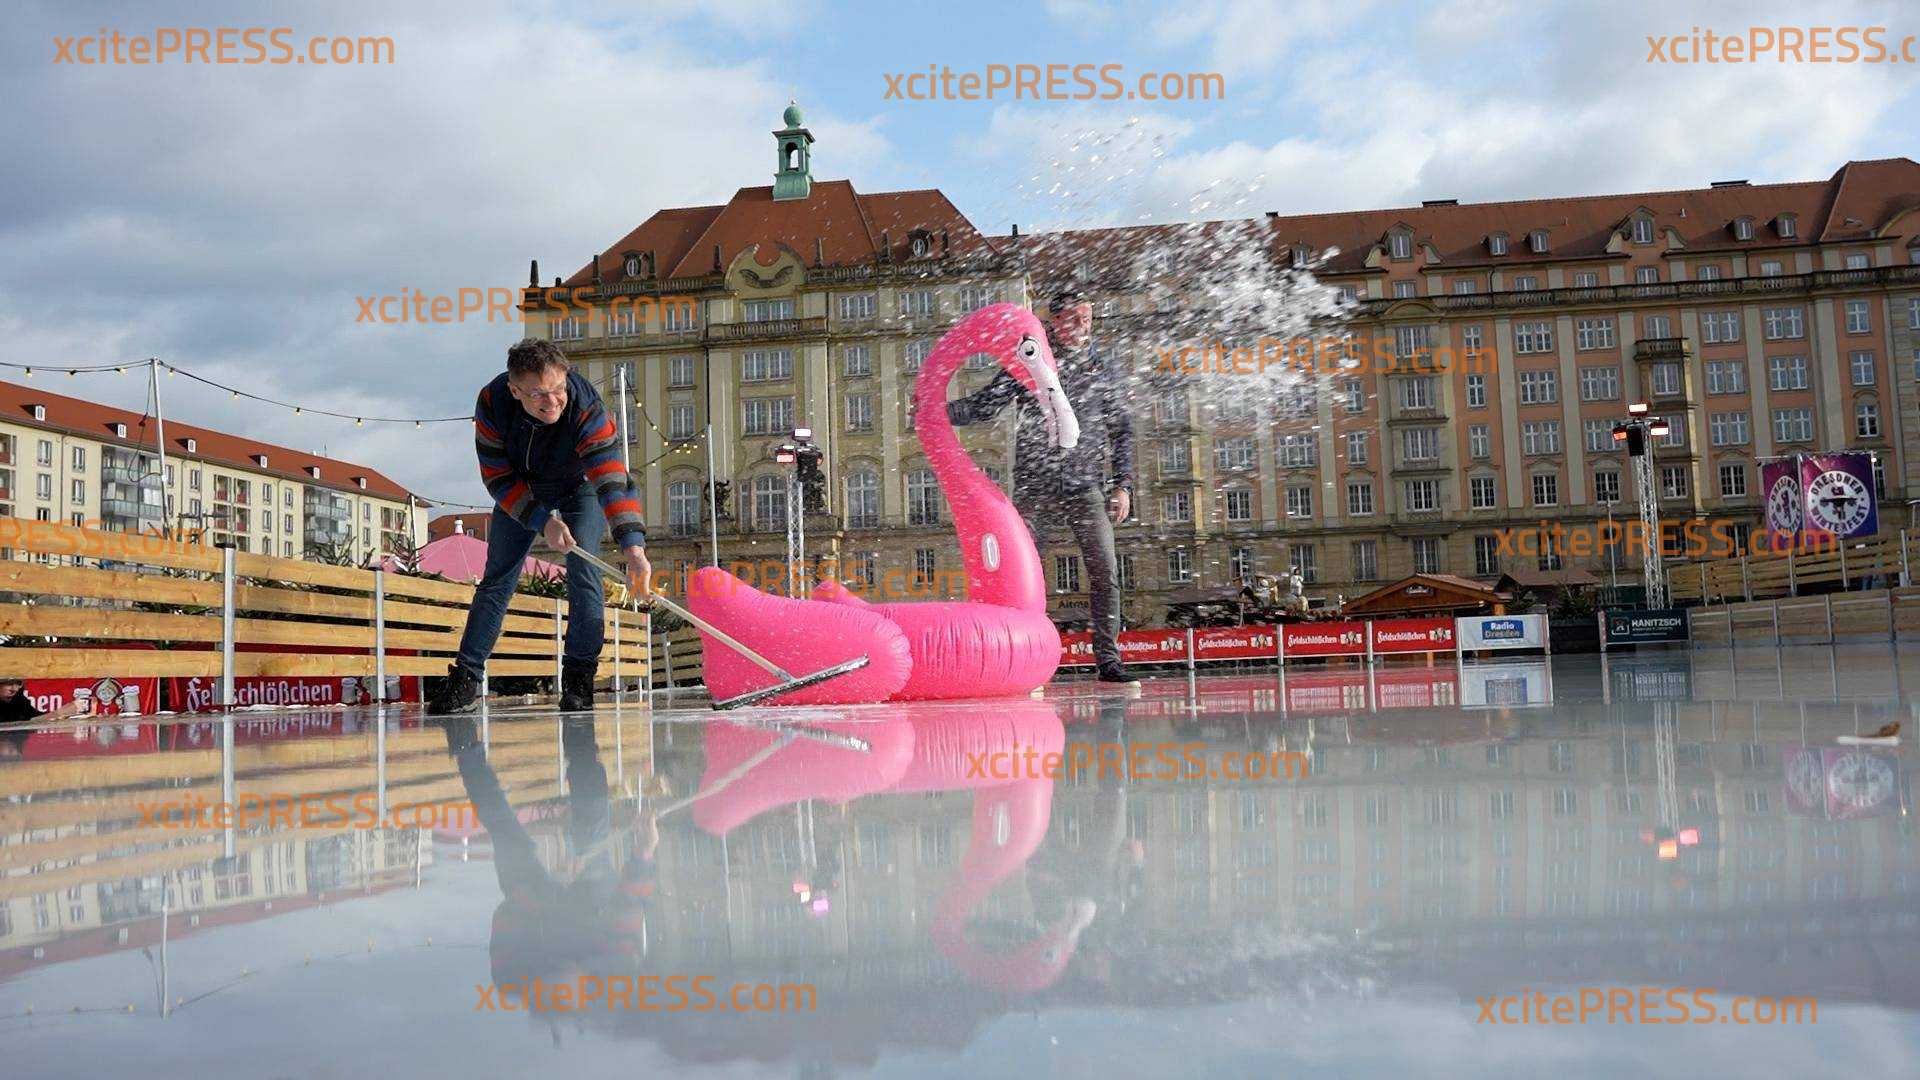 Orkanböen und Temperaturen bis zu 14°C verwandeln Eisbahn in Swimmingpool, Veranstalter schließt Eisbahn in der Innenstadt und geht mit Bade-Flamingo auf Tauchfühlung - doch der wird weggeweht! Besucher und Kinder traurig 